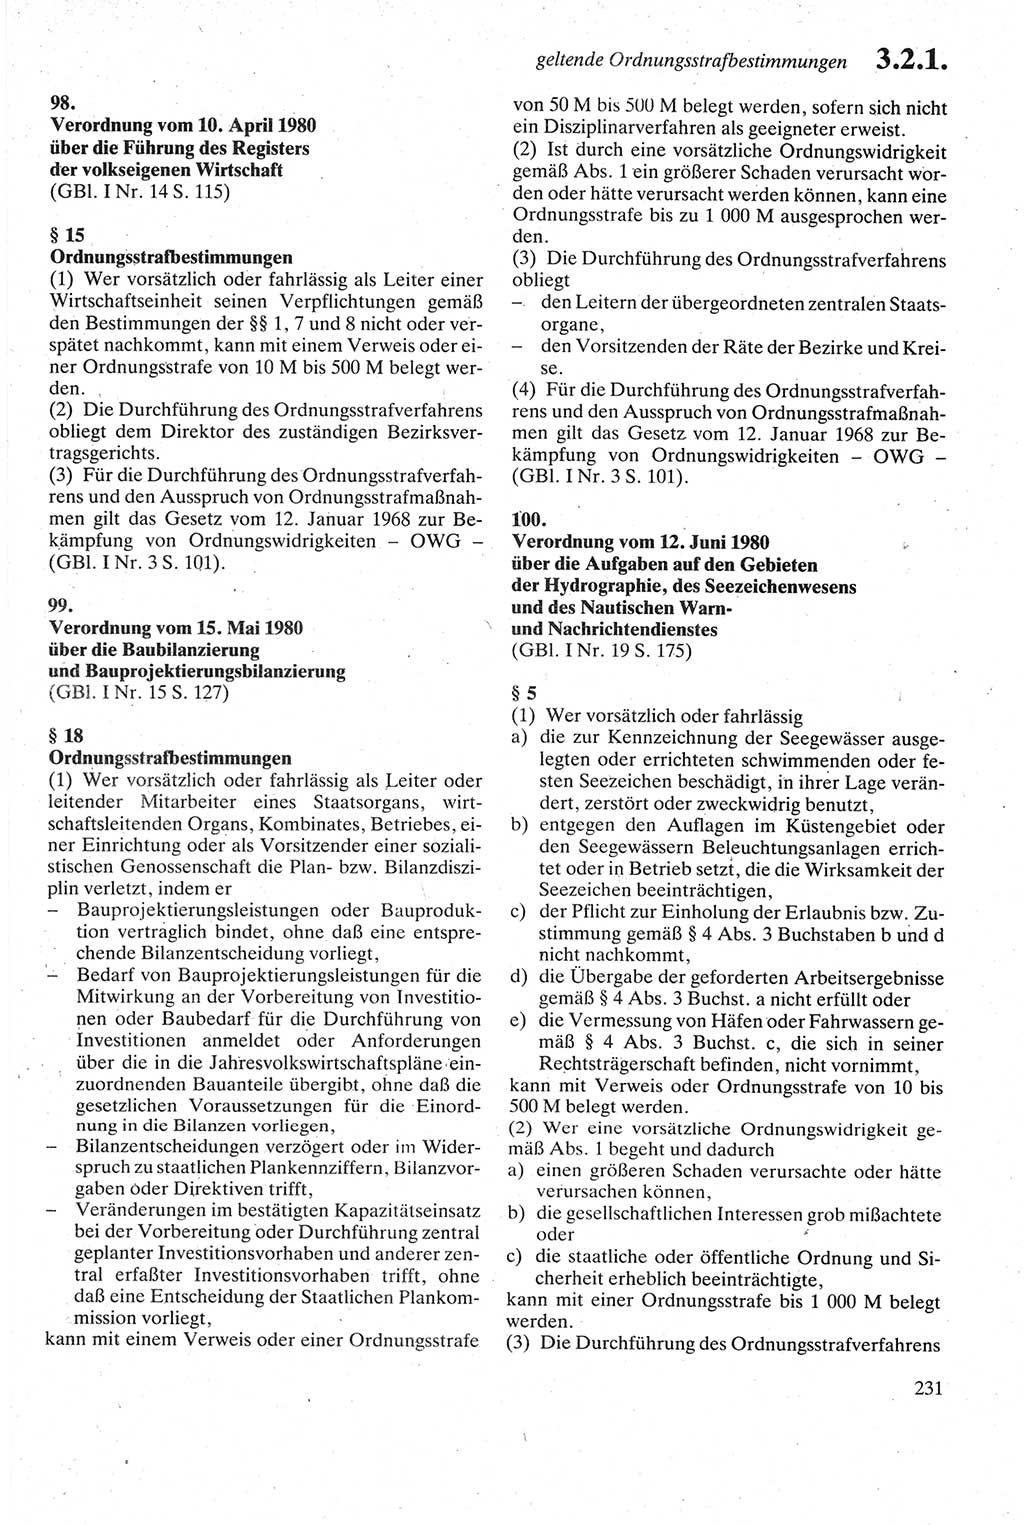 Strafgesetzbuch (StGB) der Deutschen Demokratischen Republik (DDR) sowie angrenzende Gesetze und Bestimmungen 1979, Seite 231 (StGB DDR Ges. Best. 1979, S. 231)